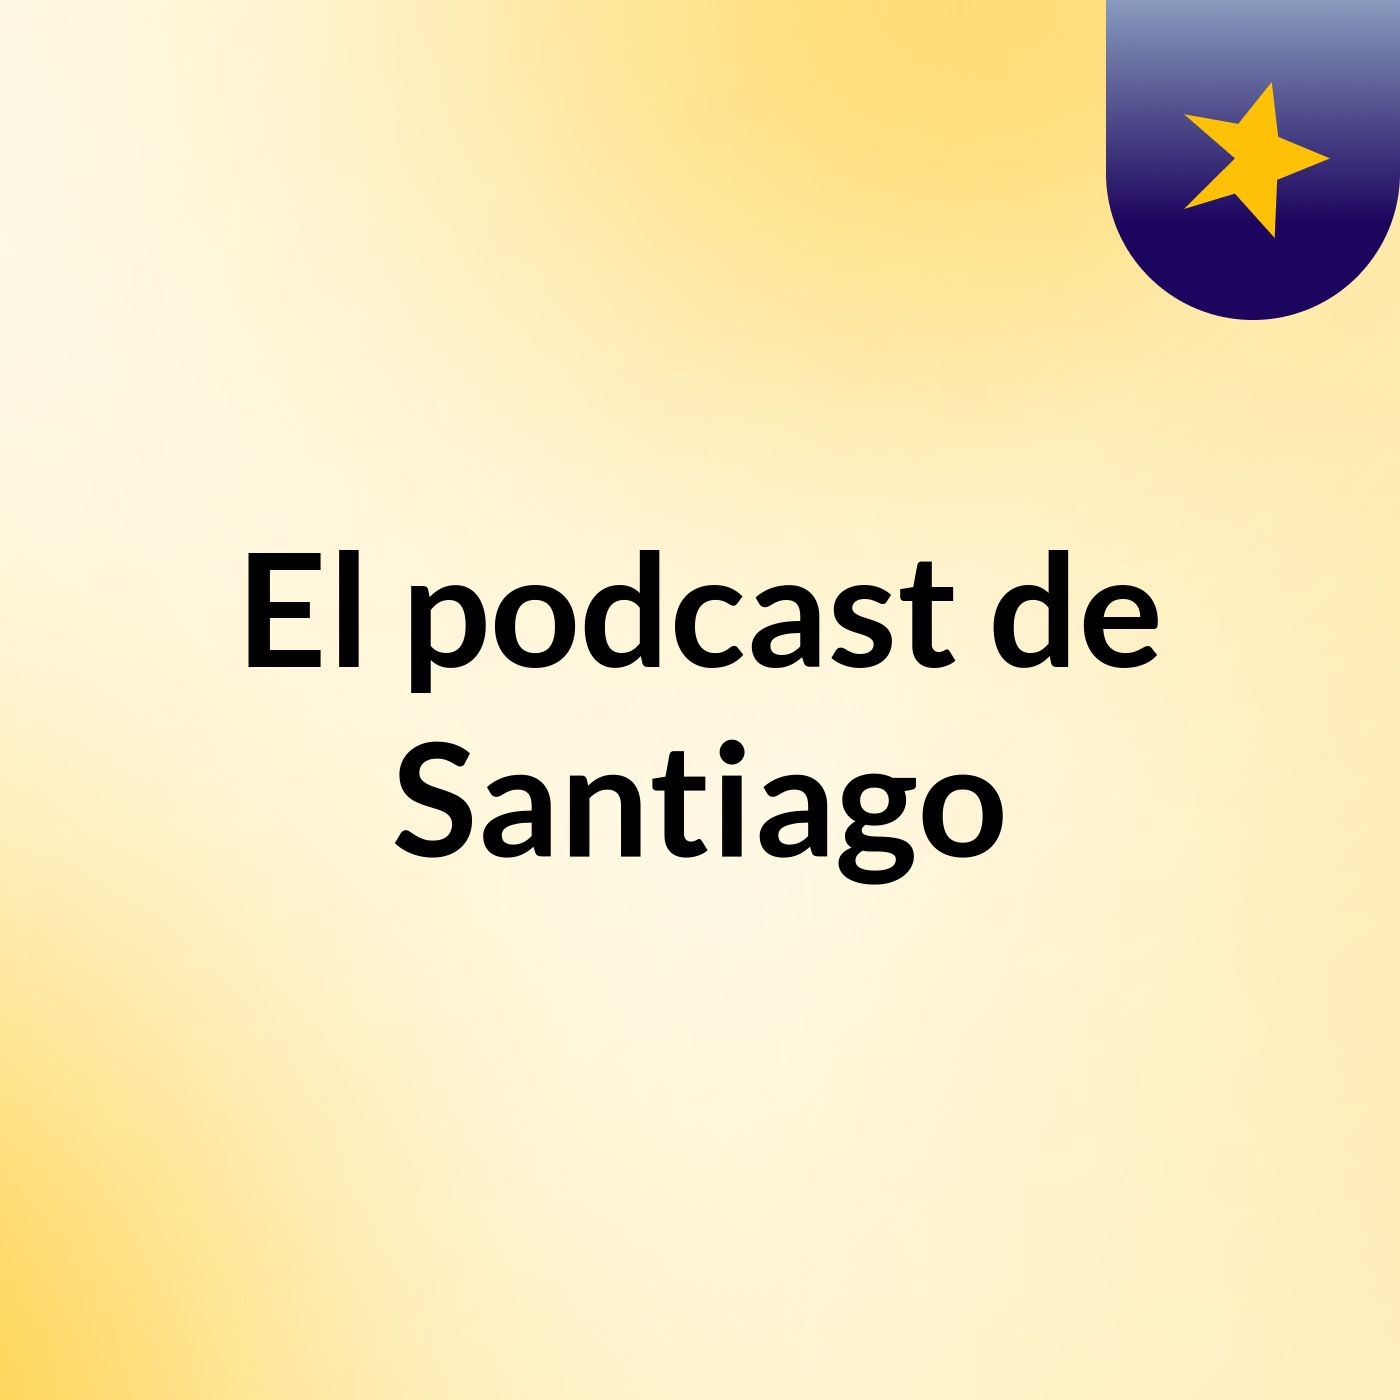 Episodio 3 - El podcast de Santiago